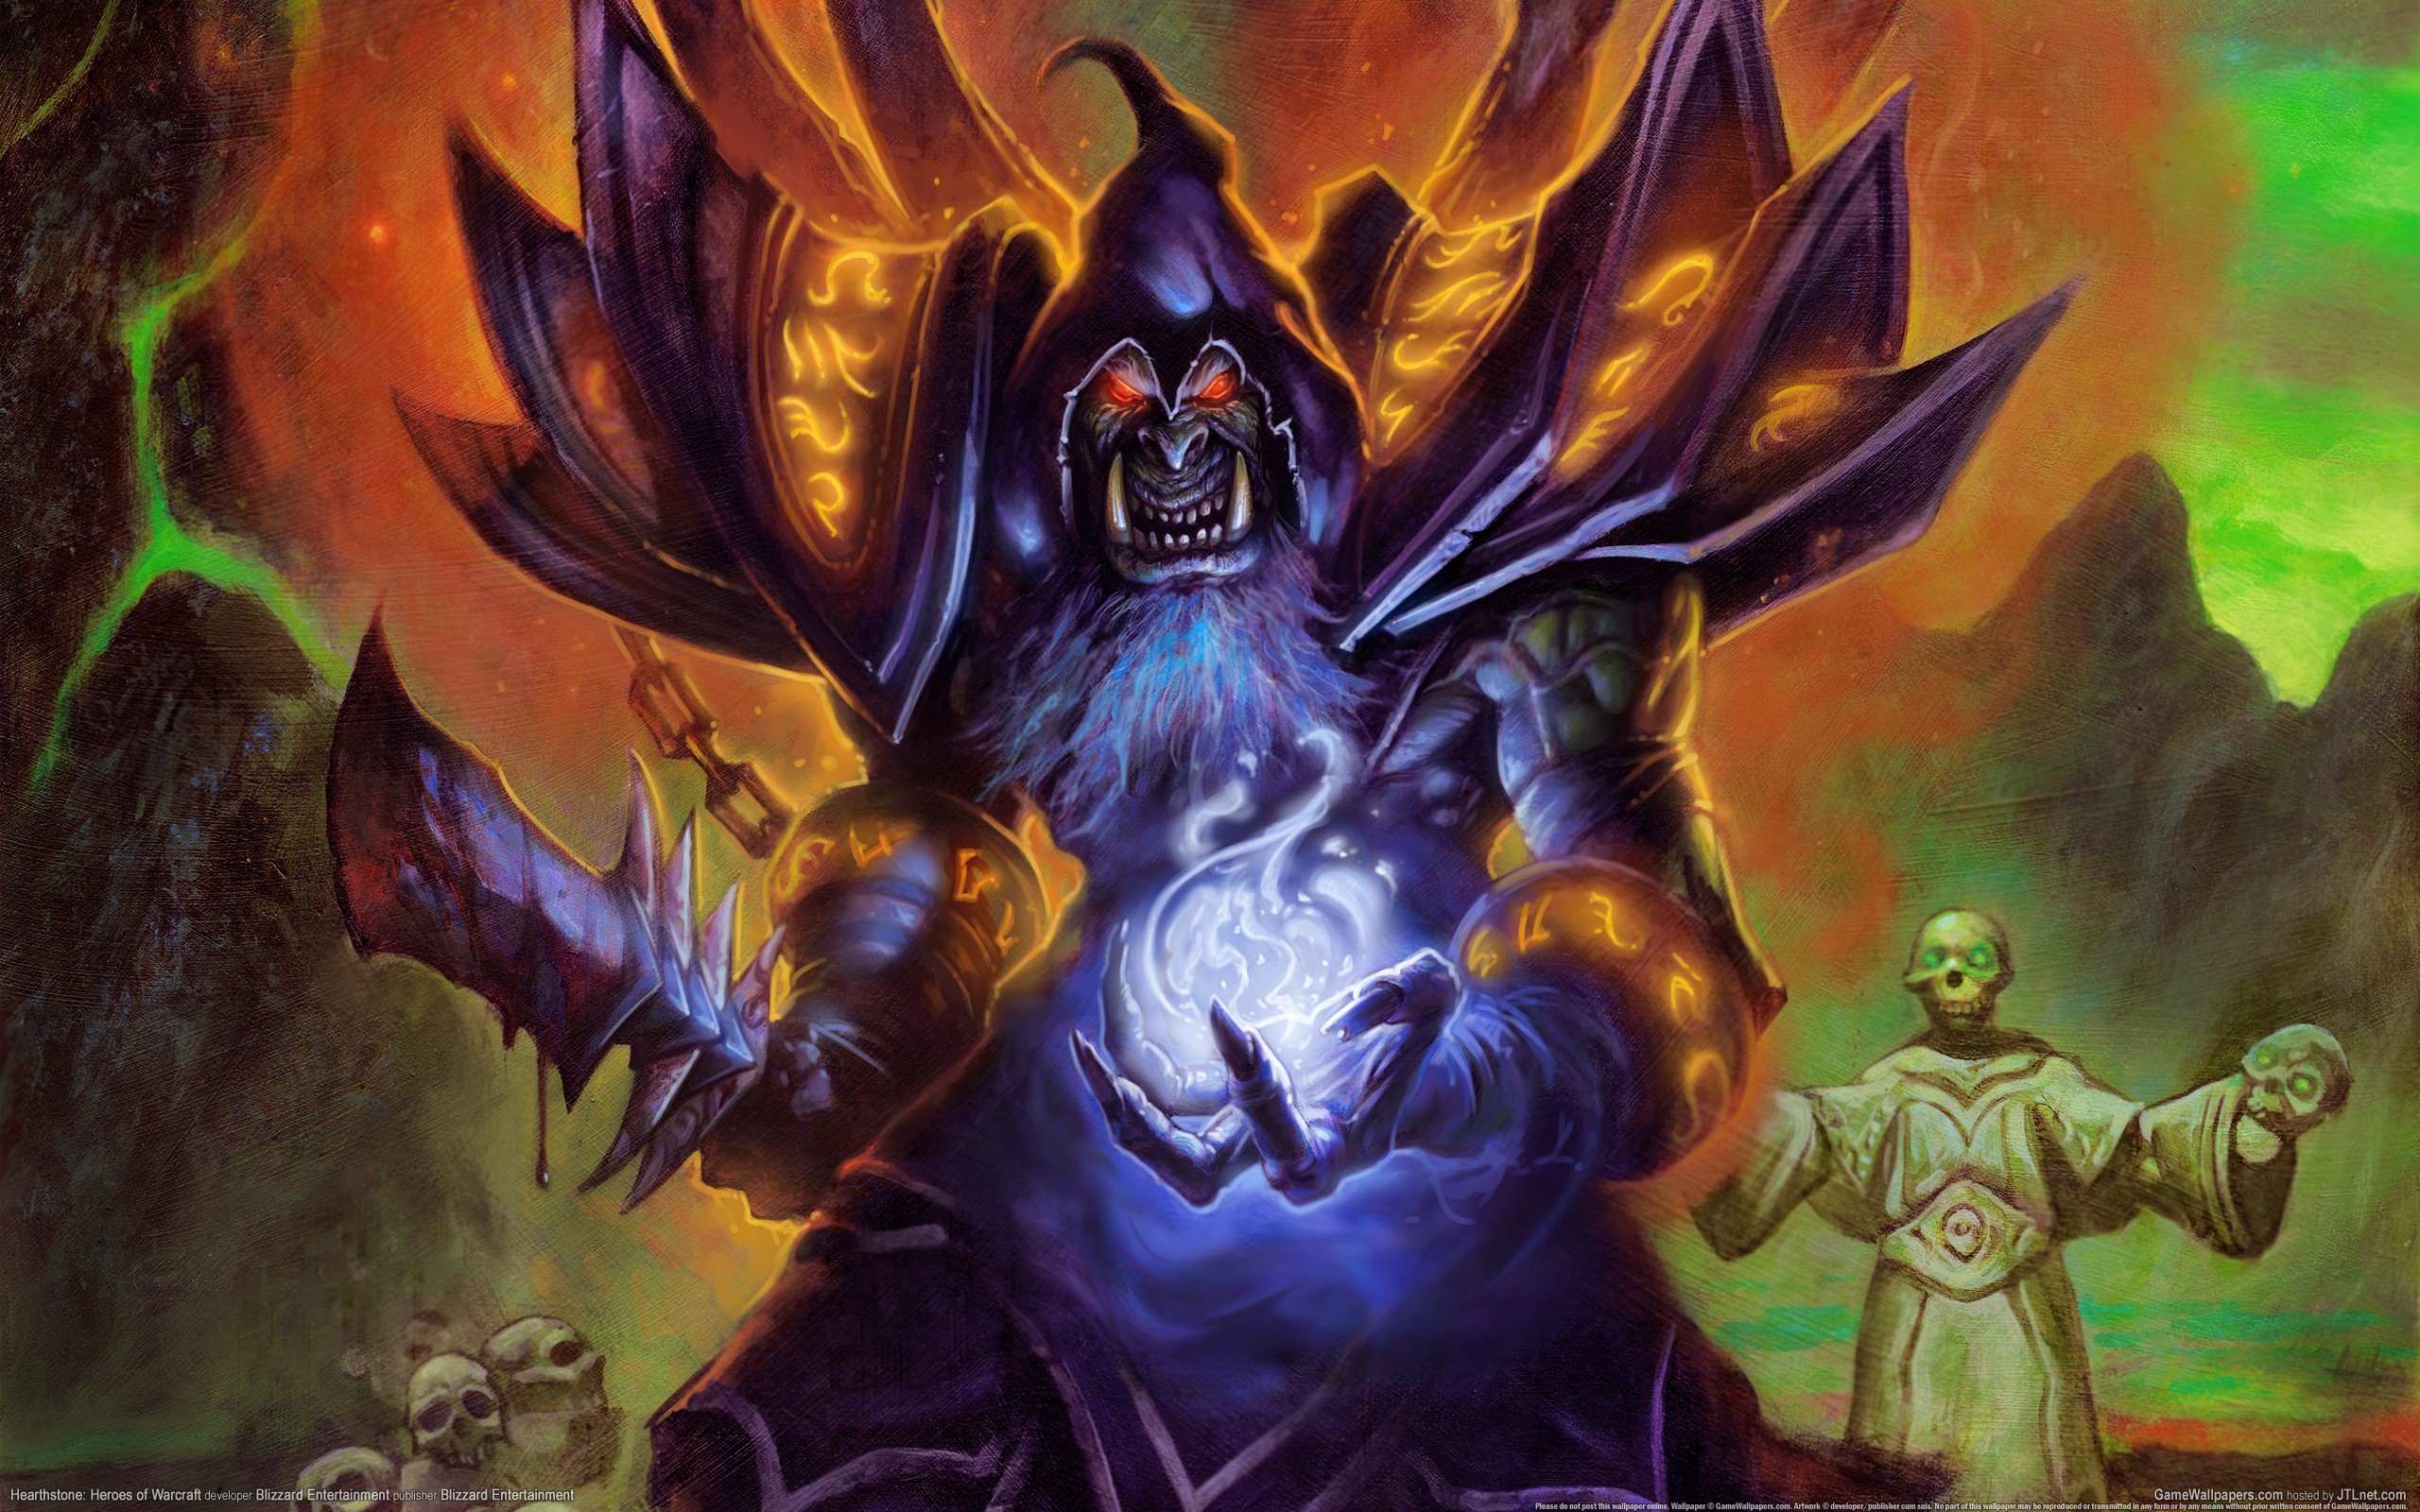 General 2560x1600 Hearthstone Warlock PC gaming video games glowing eyes Hearthstone: Heroes of Warcraft